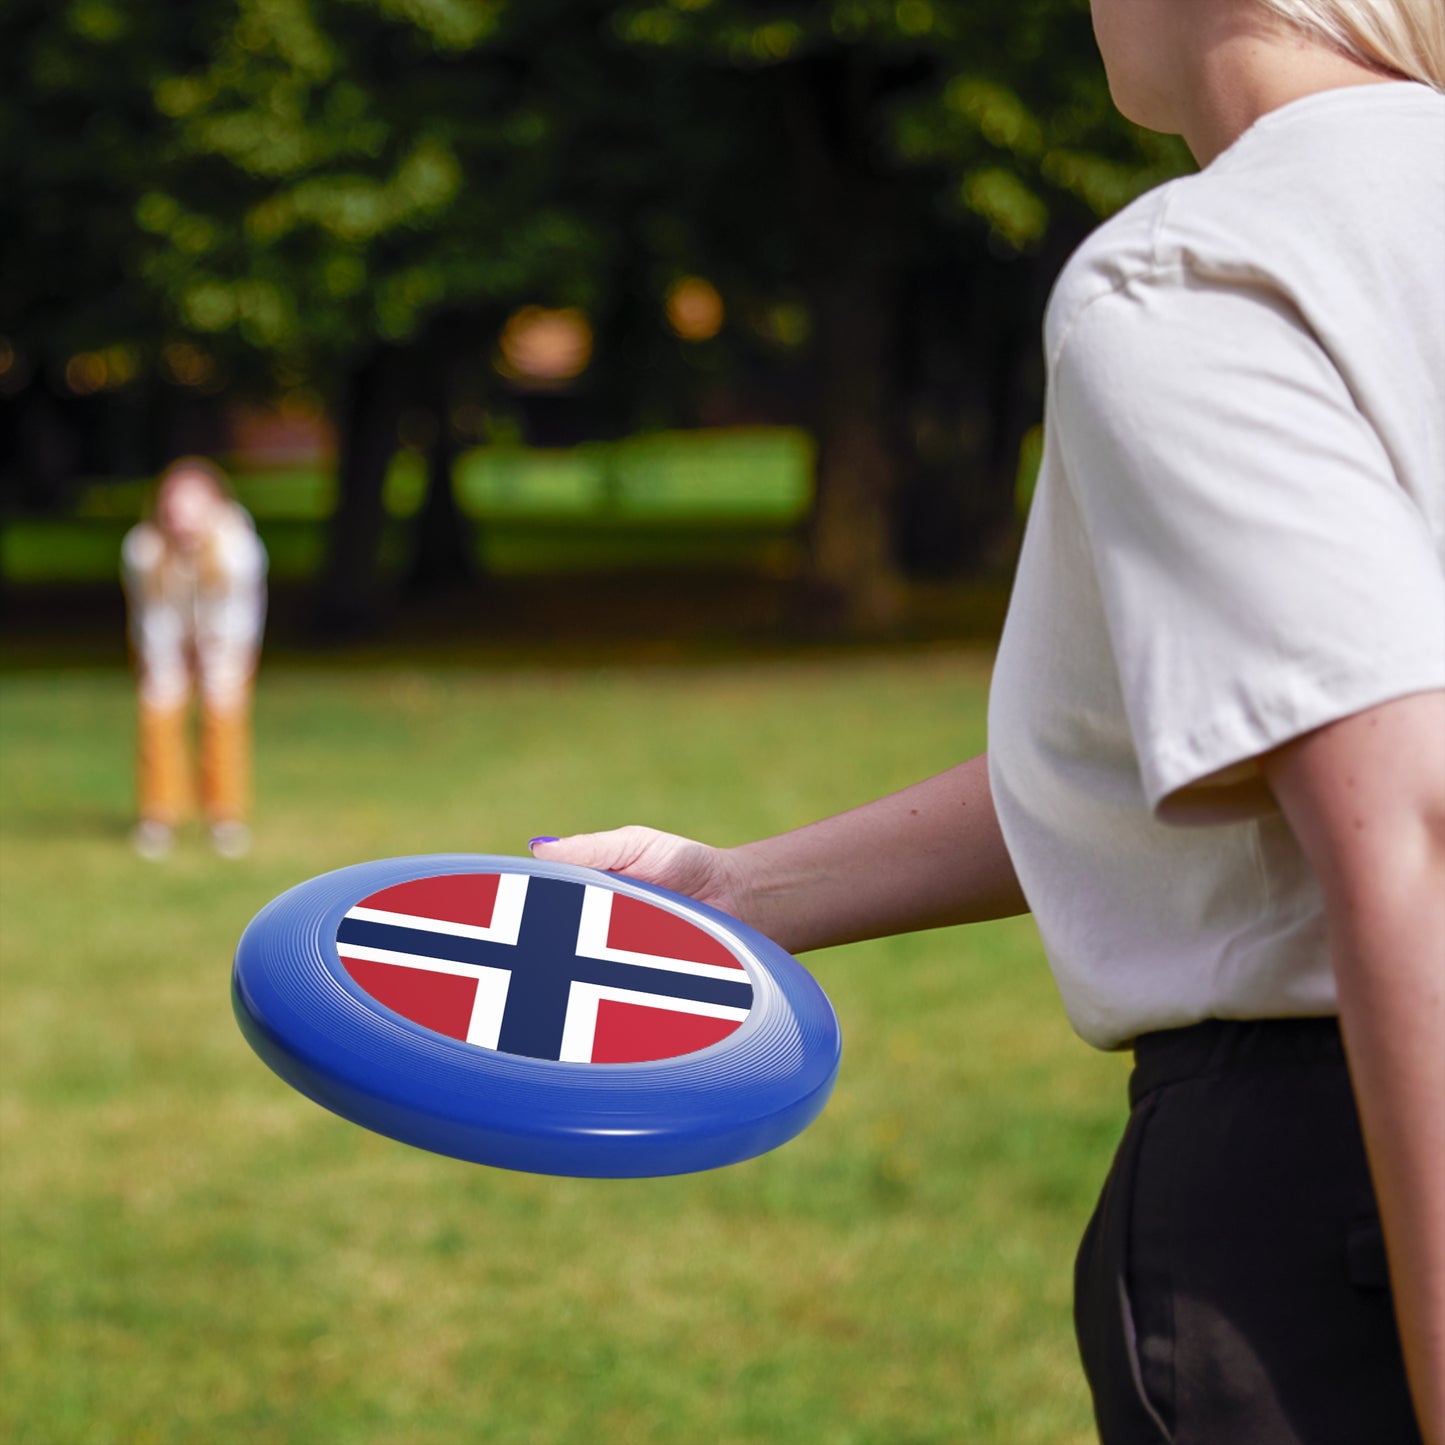 Norway Wham-O Frisbee Norwegian Frisbee Outdoor Fun